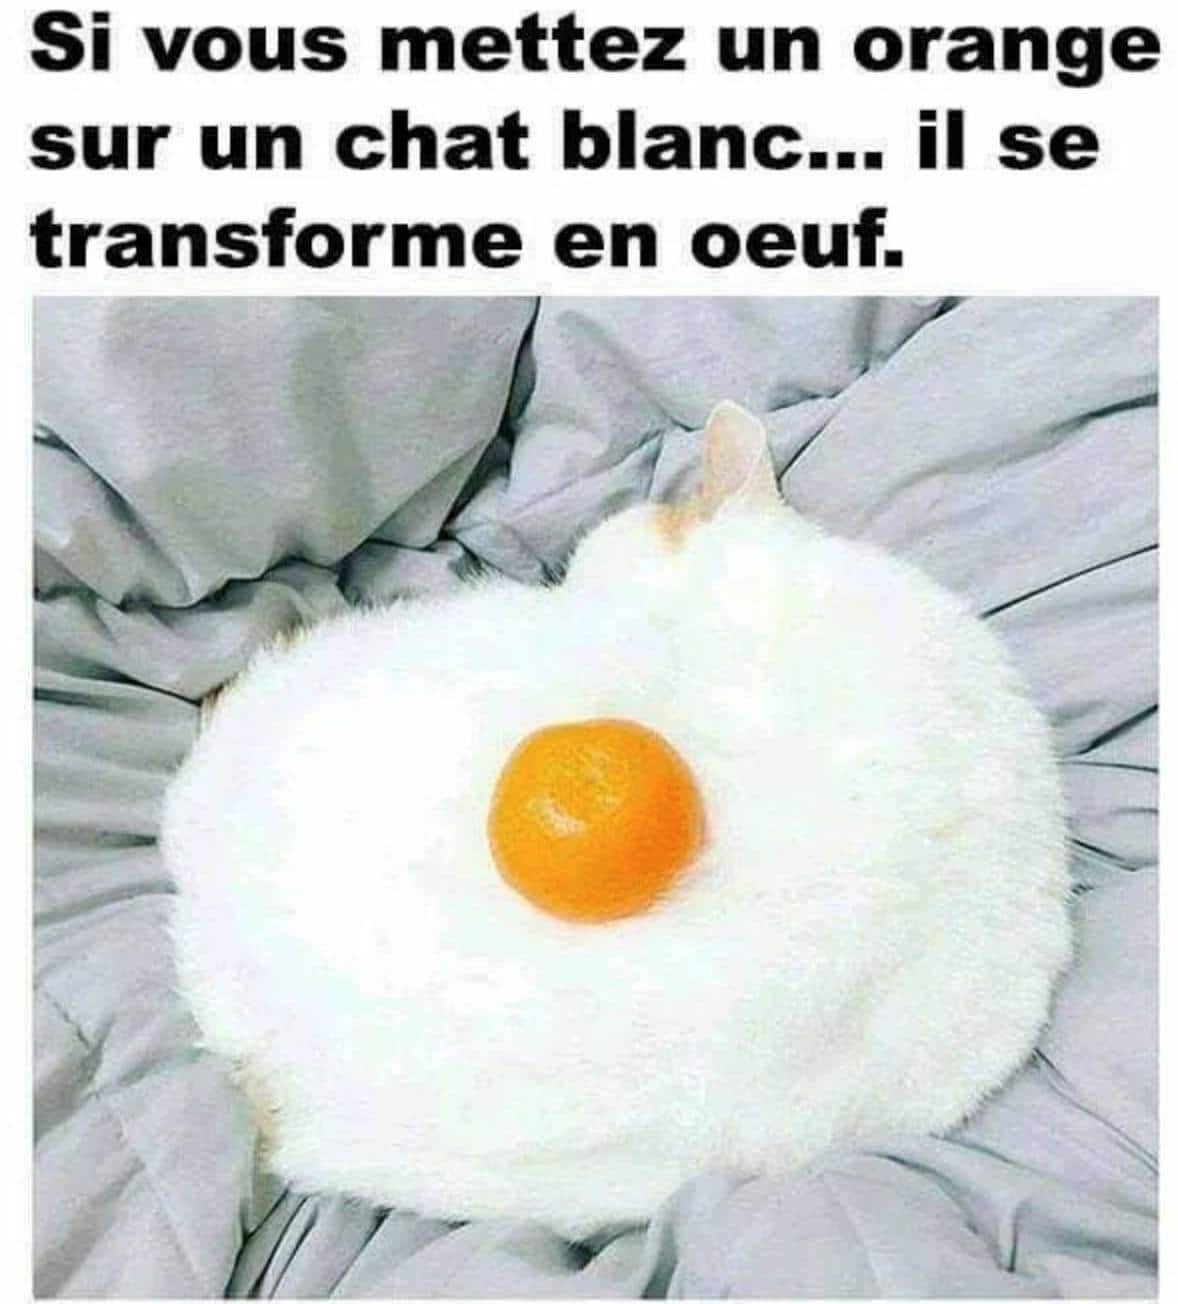 Si vous mettez un orange sur un chat blanc